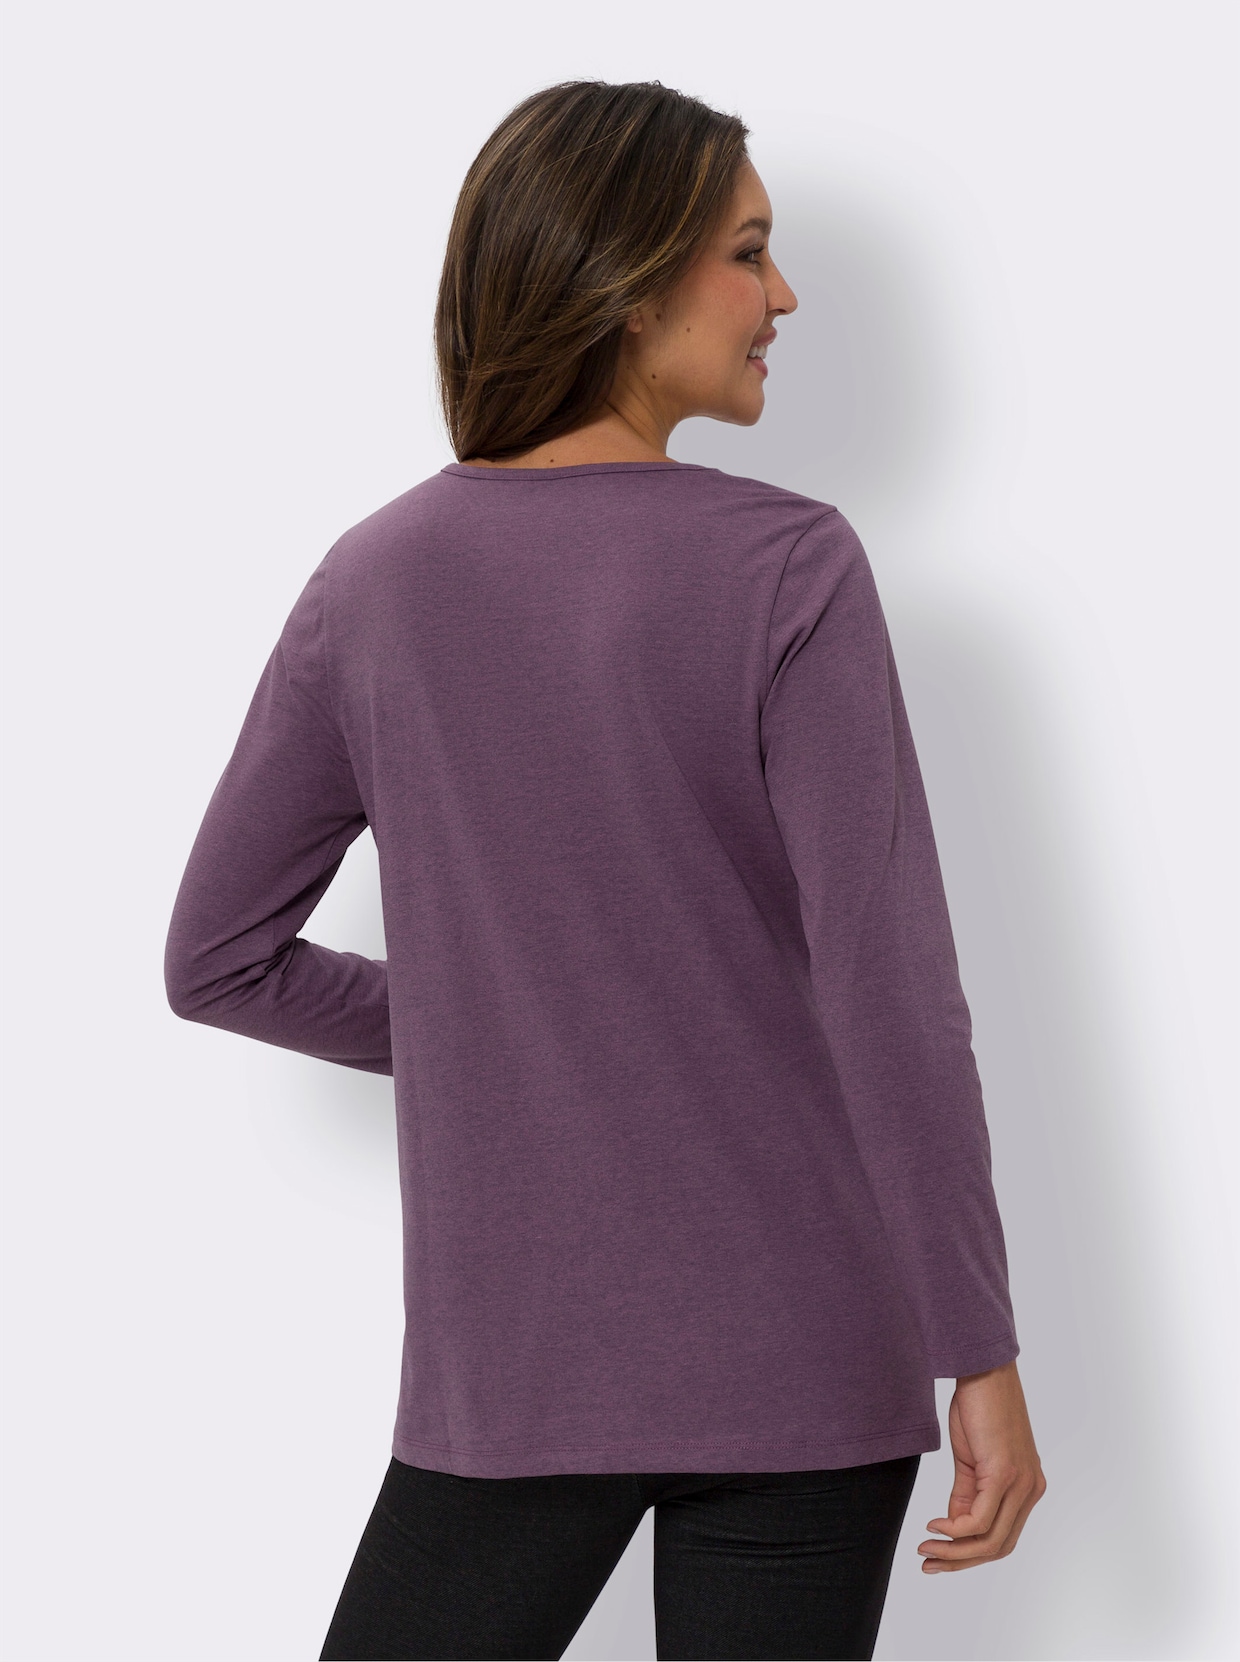 Longshirt - violett-meliert